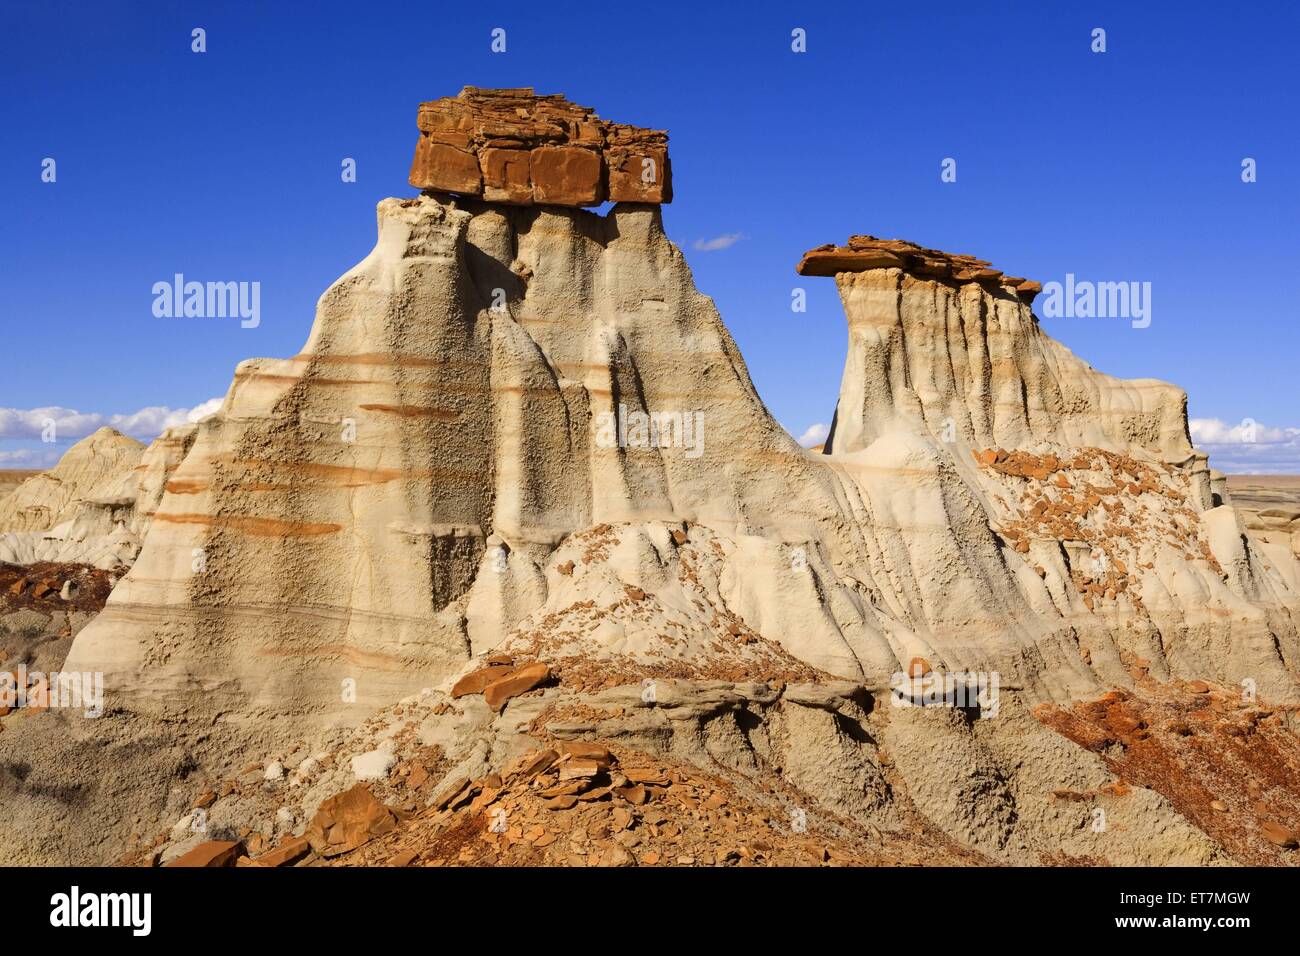 Giant Hoodoos, Lehmskulpturen mit Felskappe in den Badlands, USA, New Mexico, Bisti Badlands Wilderness Area | Giant Hoodoos, er Stock Photo